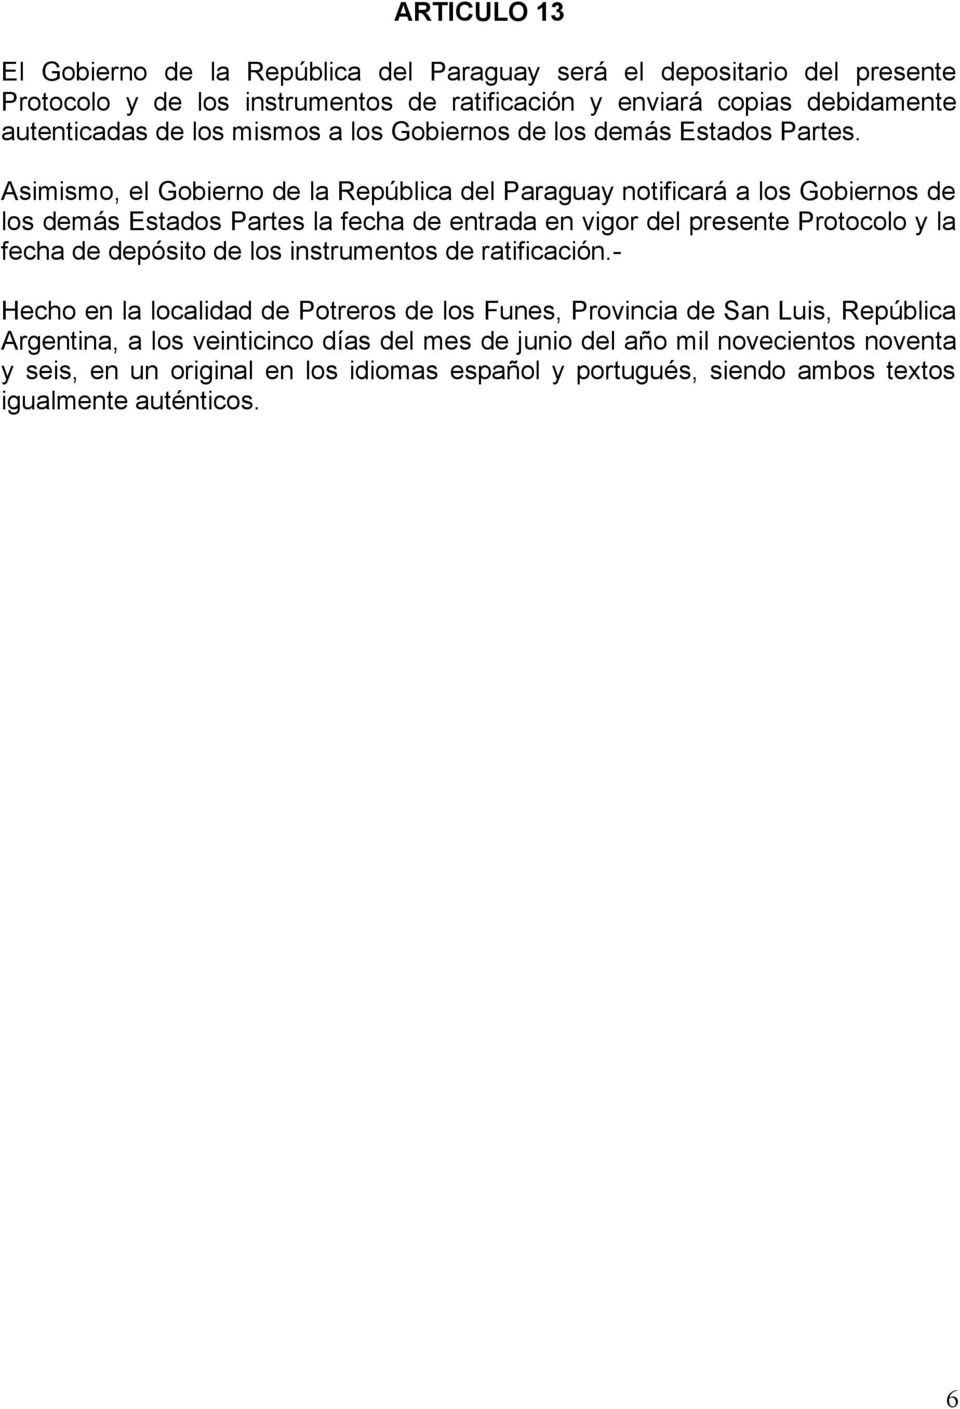 Asimismo, el Gobierno de la República del Paraguay notificará a los Gobiernos de los demás Estados Partes la fecha de entrada en vigor del presente Protocolo y la fecha de depósito